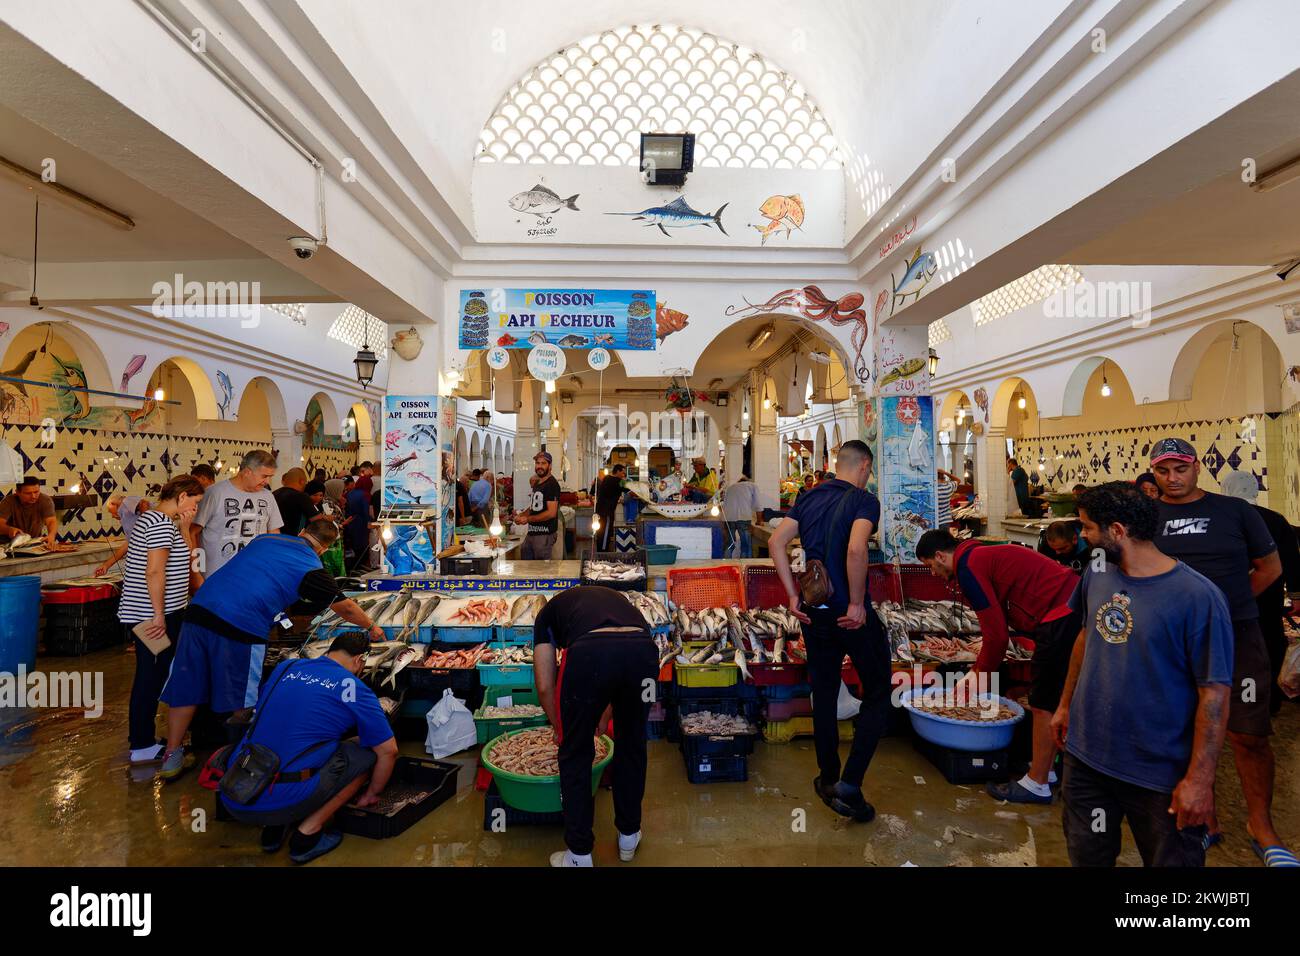 Mercato del pesce nella città vecchia di Medina di Sousse in Tunisia. Gruppo di persone che acquistano pesce in un mercato tradizionale. Zona costiera. Foto Stock